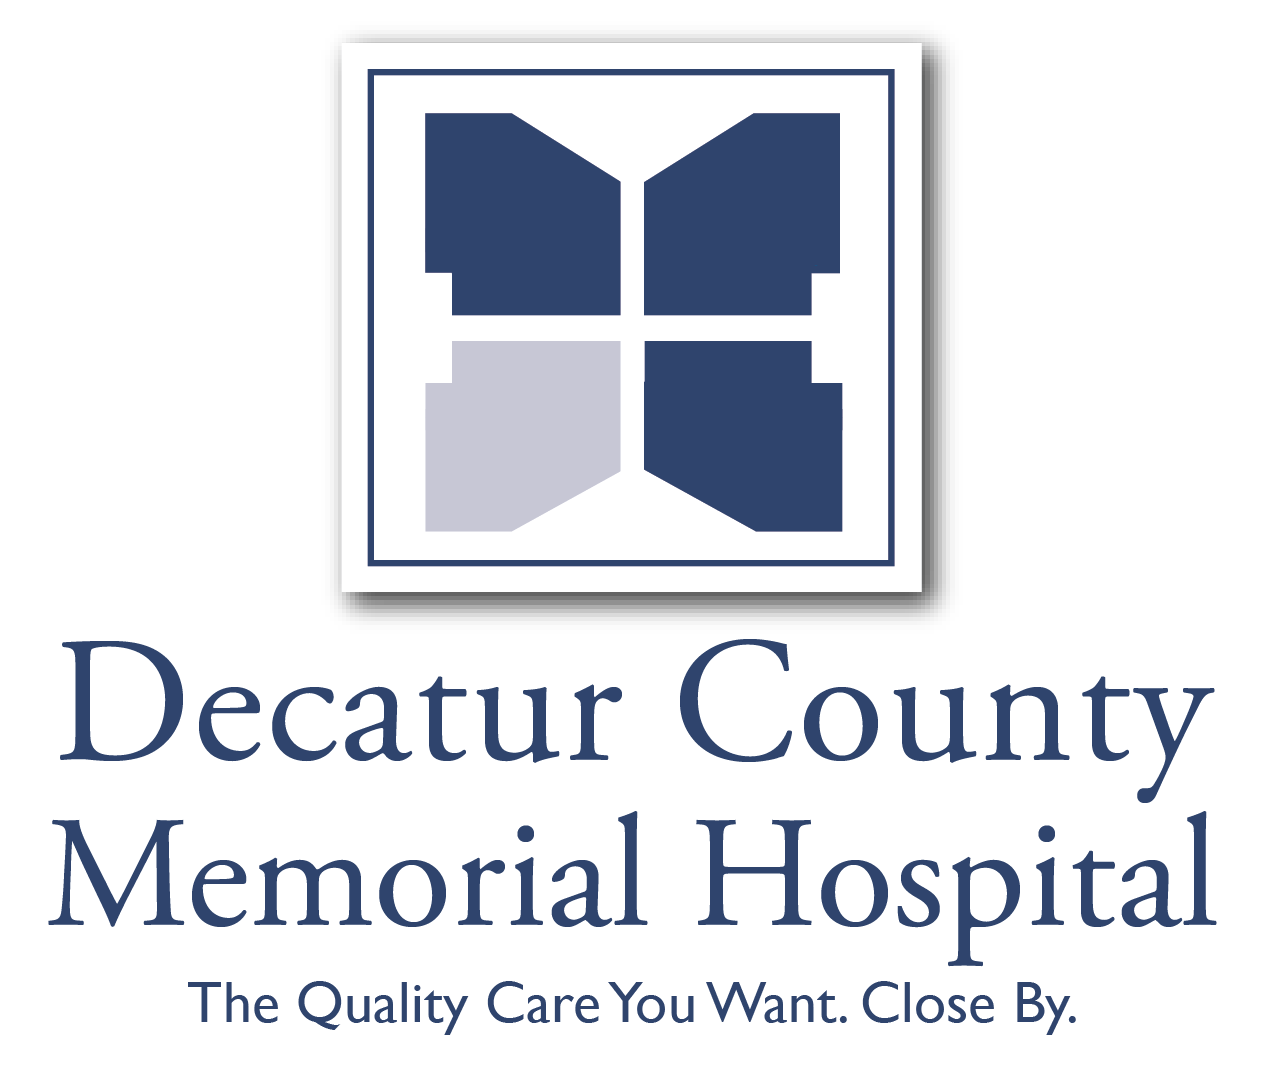 Decatur Count Memorial Hospital